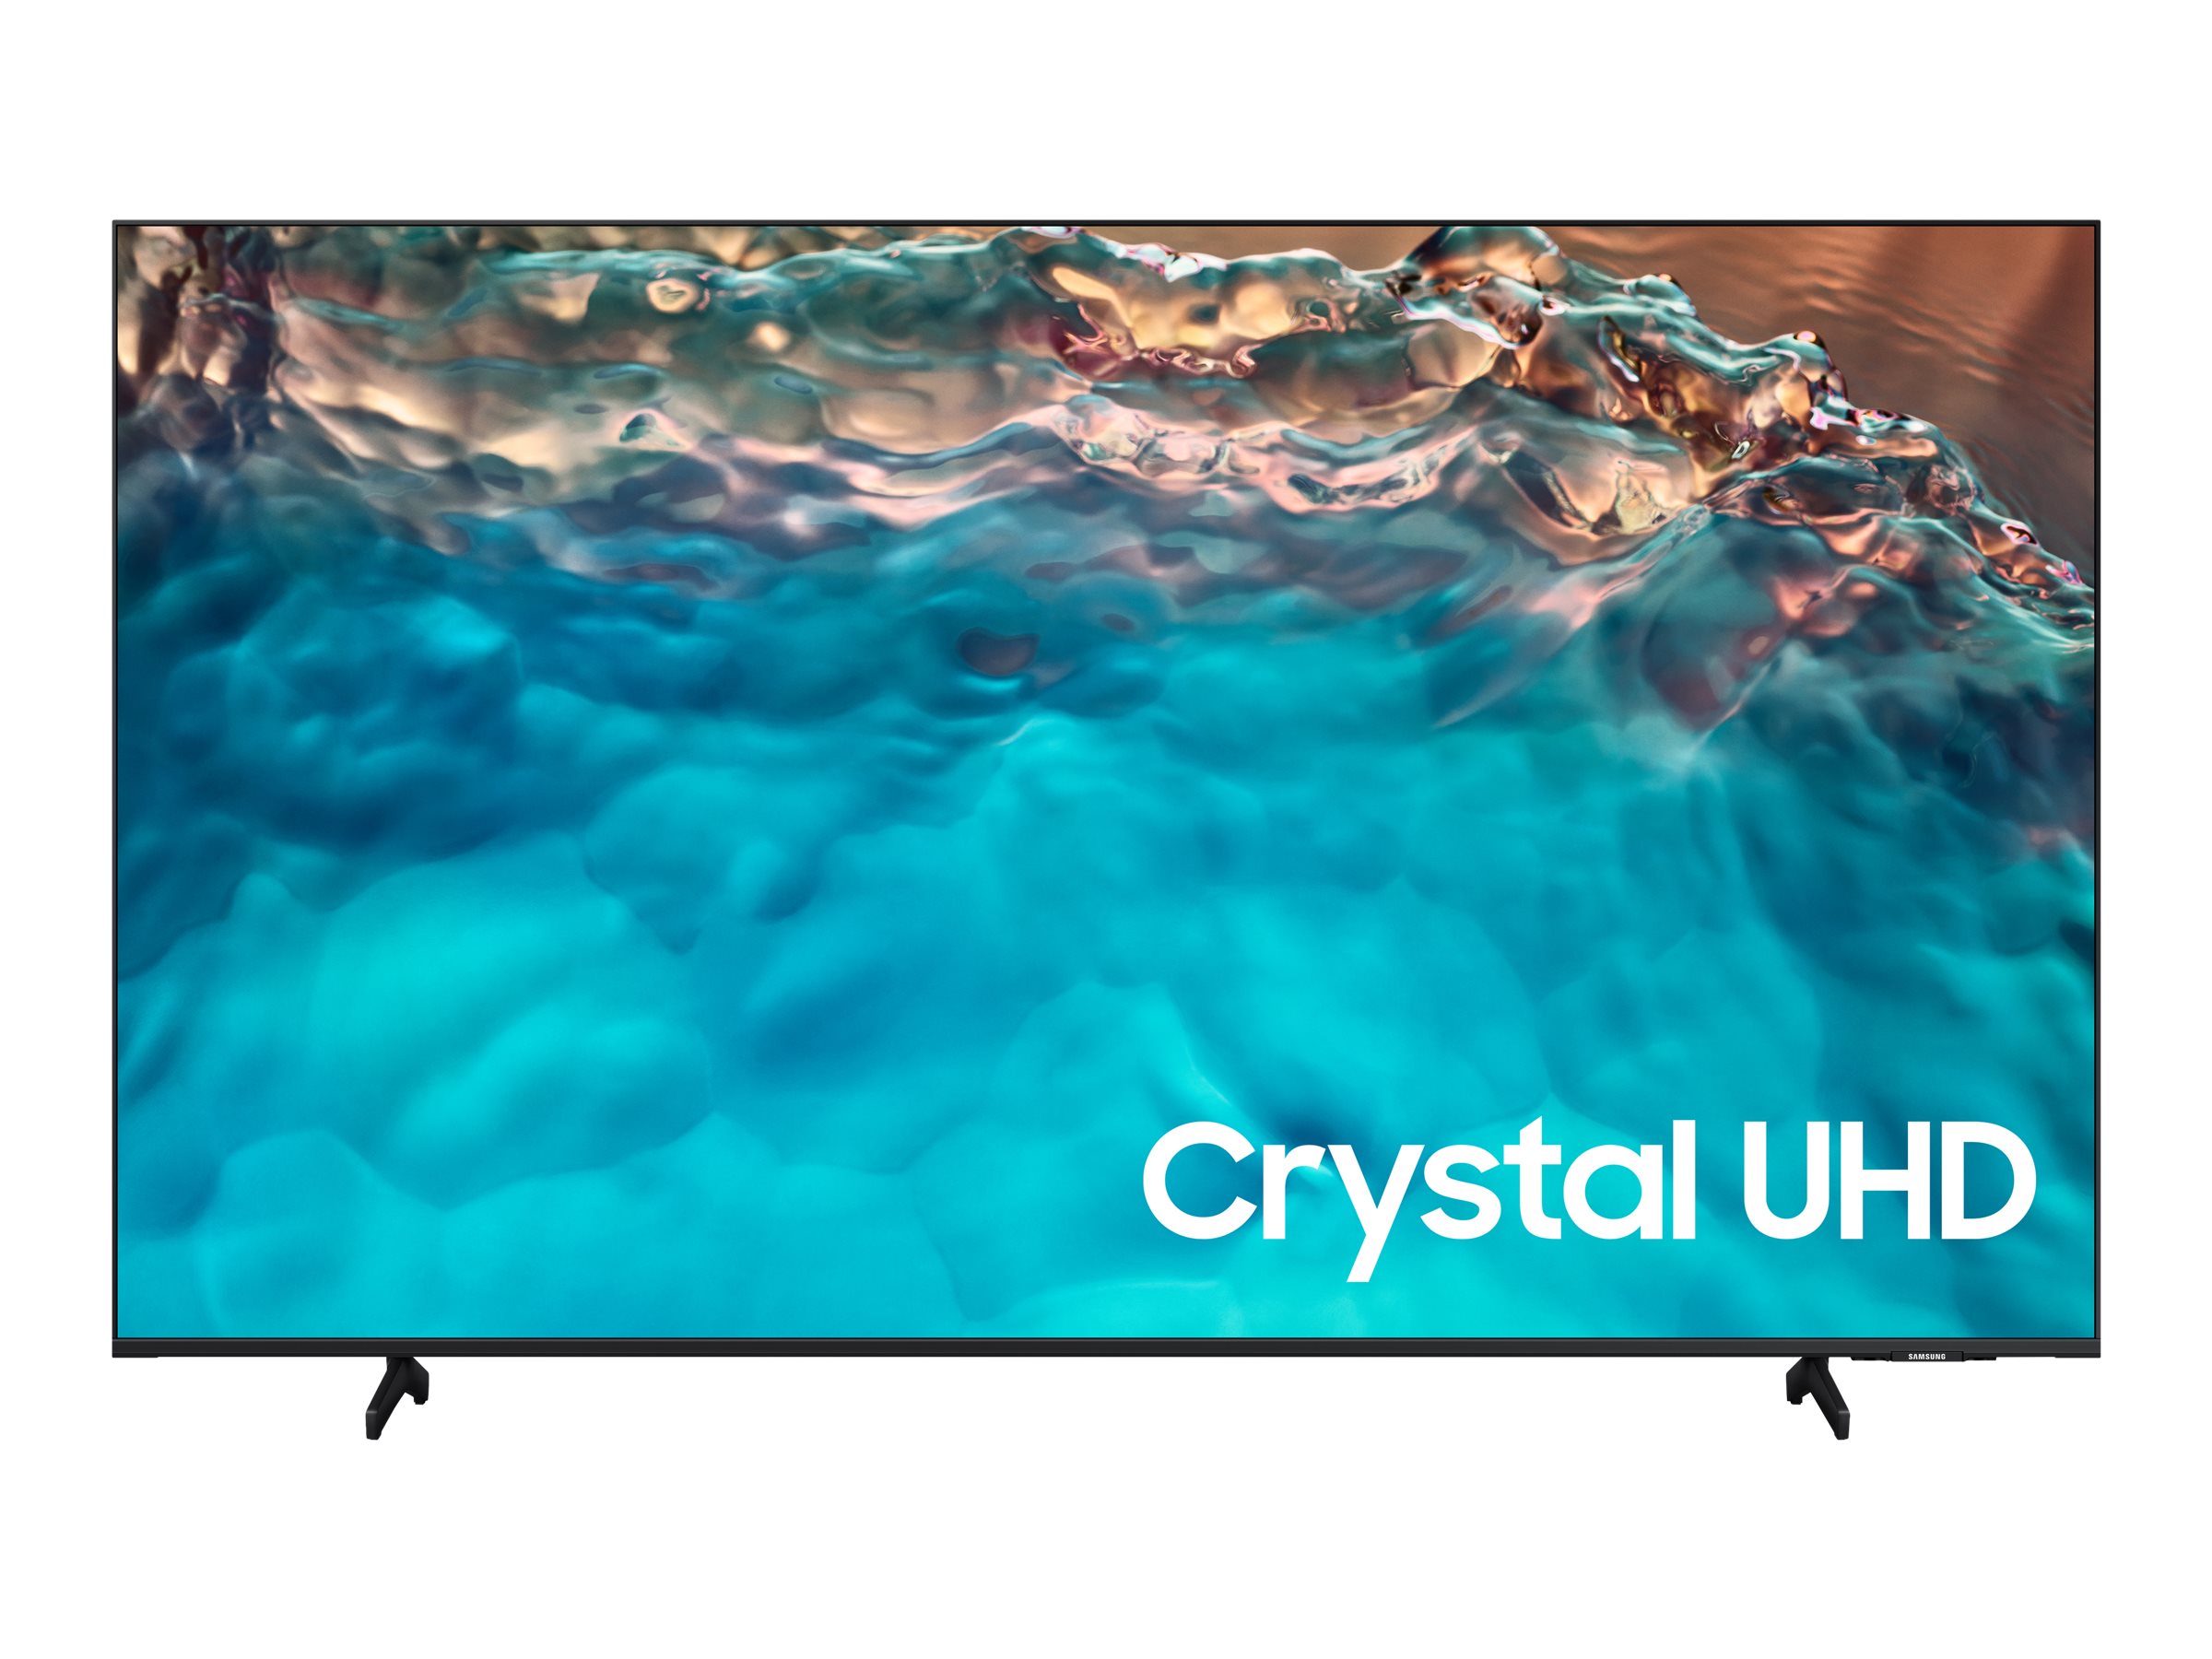 Samsung HG43BU800EE - Classe de diagonale 43" HBU8000 Series TV LCD rétro-éclairée par LED - Crystal UHD - hôtel / hospitalité - 4K UHD (2160p) 3840 x 2160 - HDR - noir - HG43BU800EEXEN - Télévisions et écrans pour le secteur de l'hôtellerie